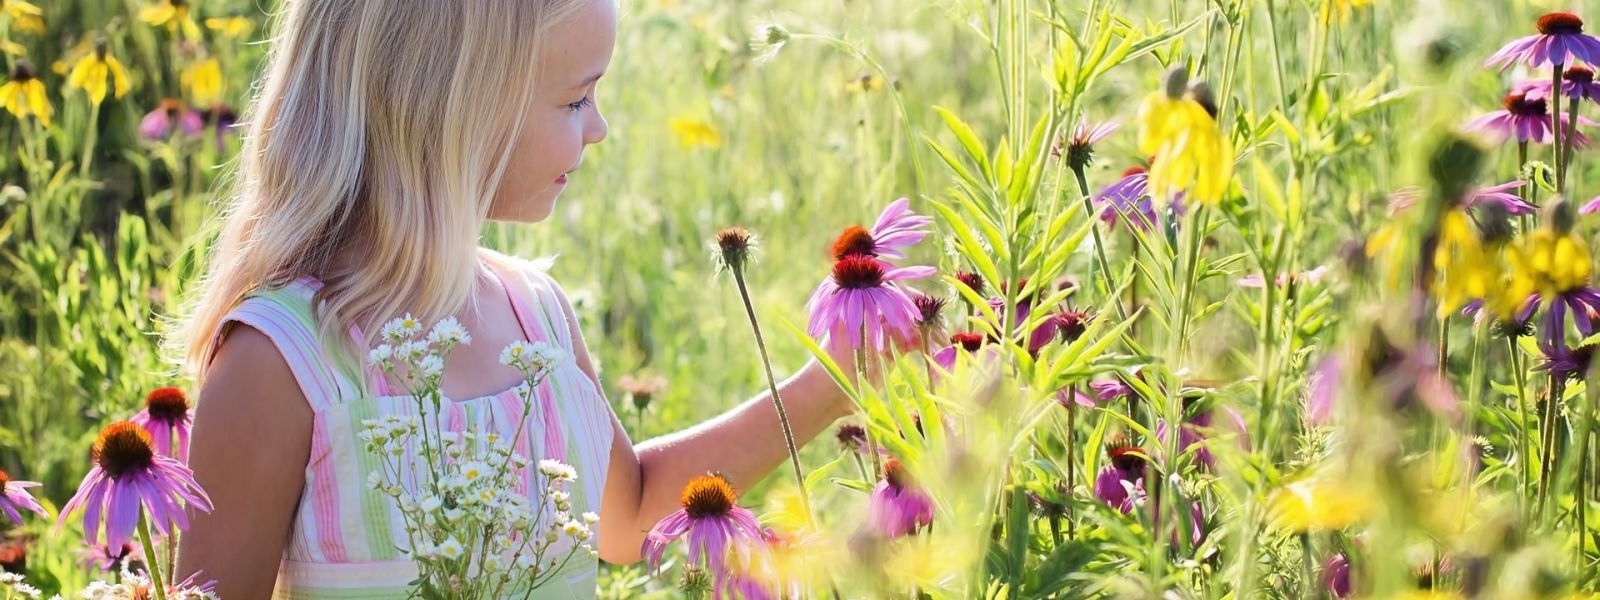 Mała dziewczynka zbierająca kwiatki na łące